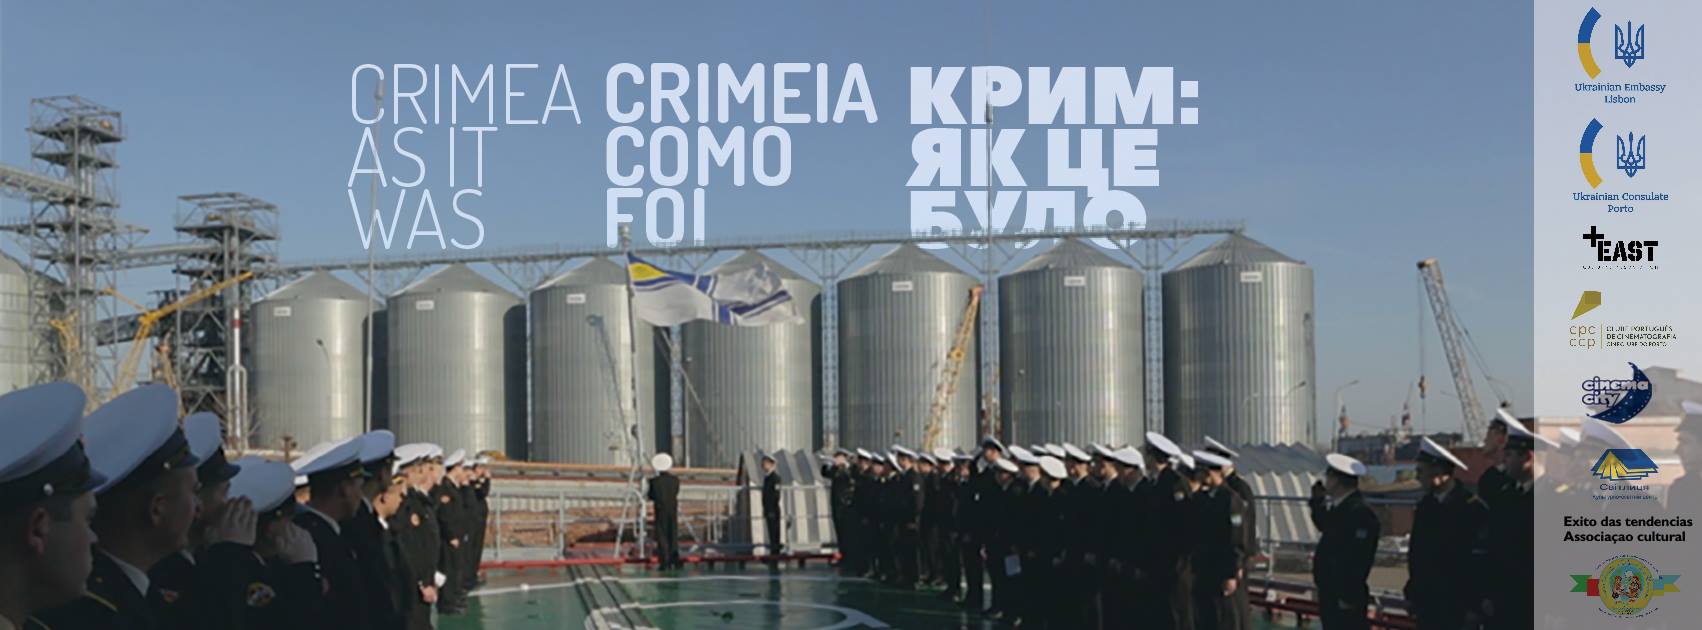 Фільм «Крим. Як це було» — спогади військових про анексію